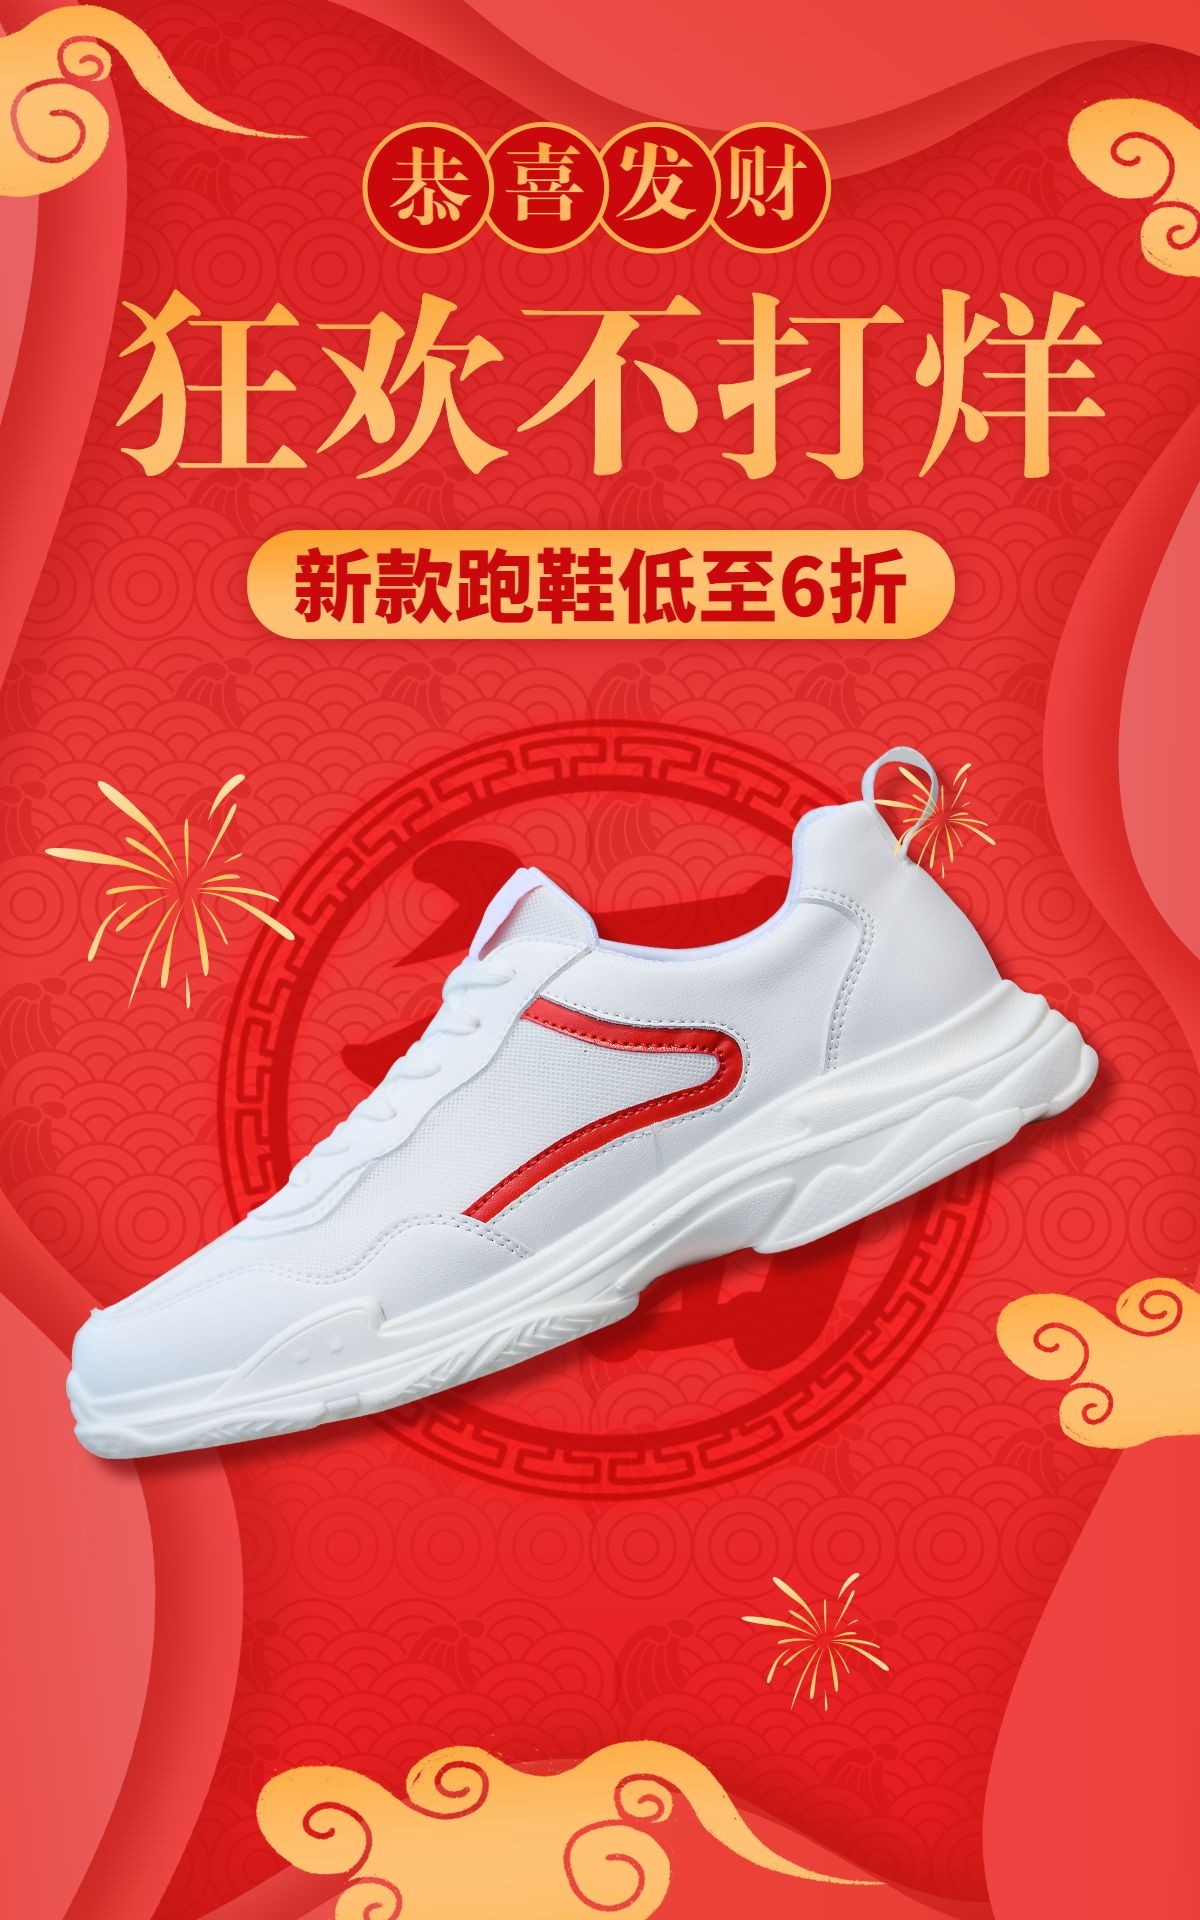 喜庆年货节男鞋运动鞋海报预览效果